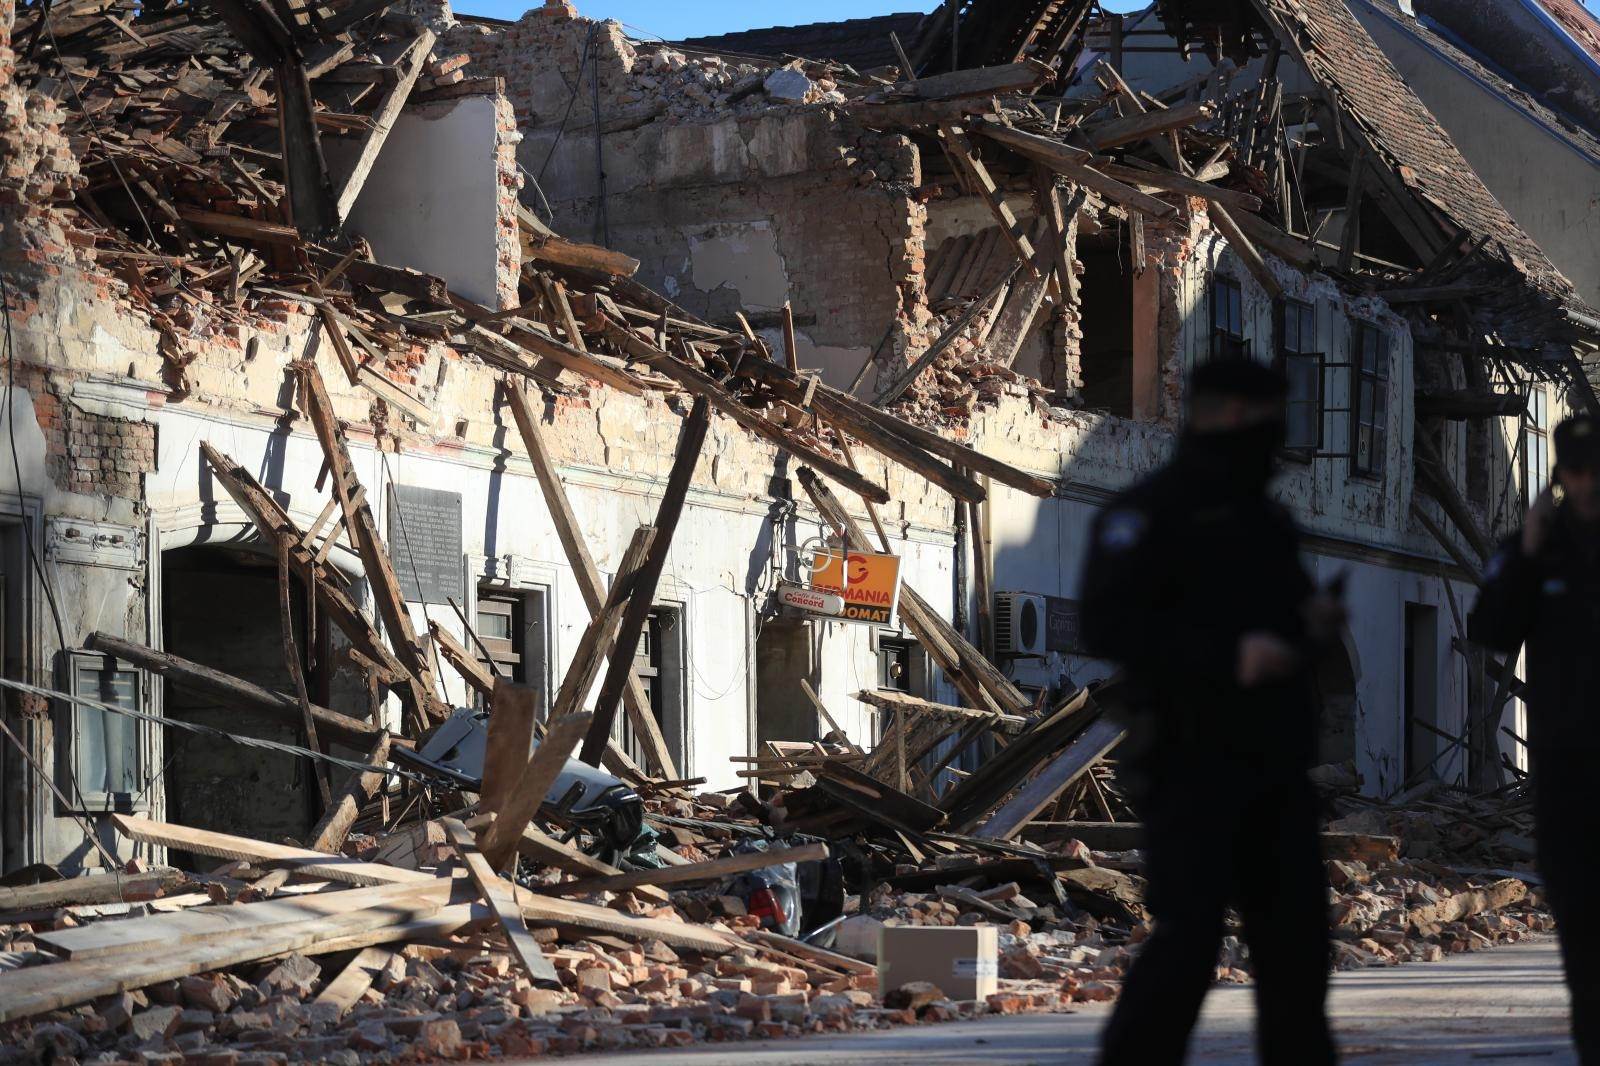 Potres u Banovini uništio je brojne lokale i trgovine.